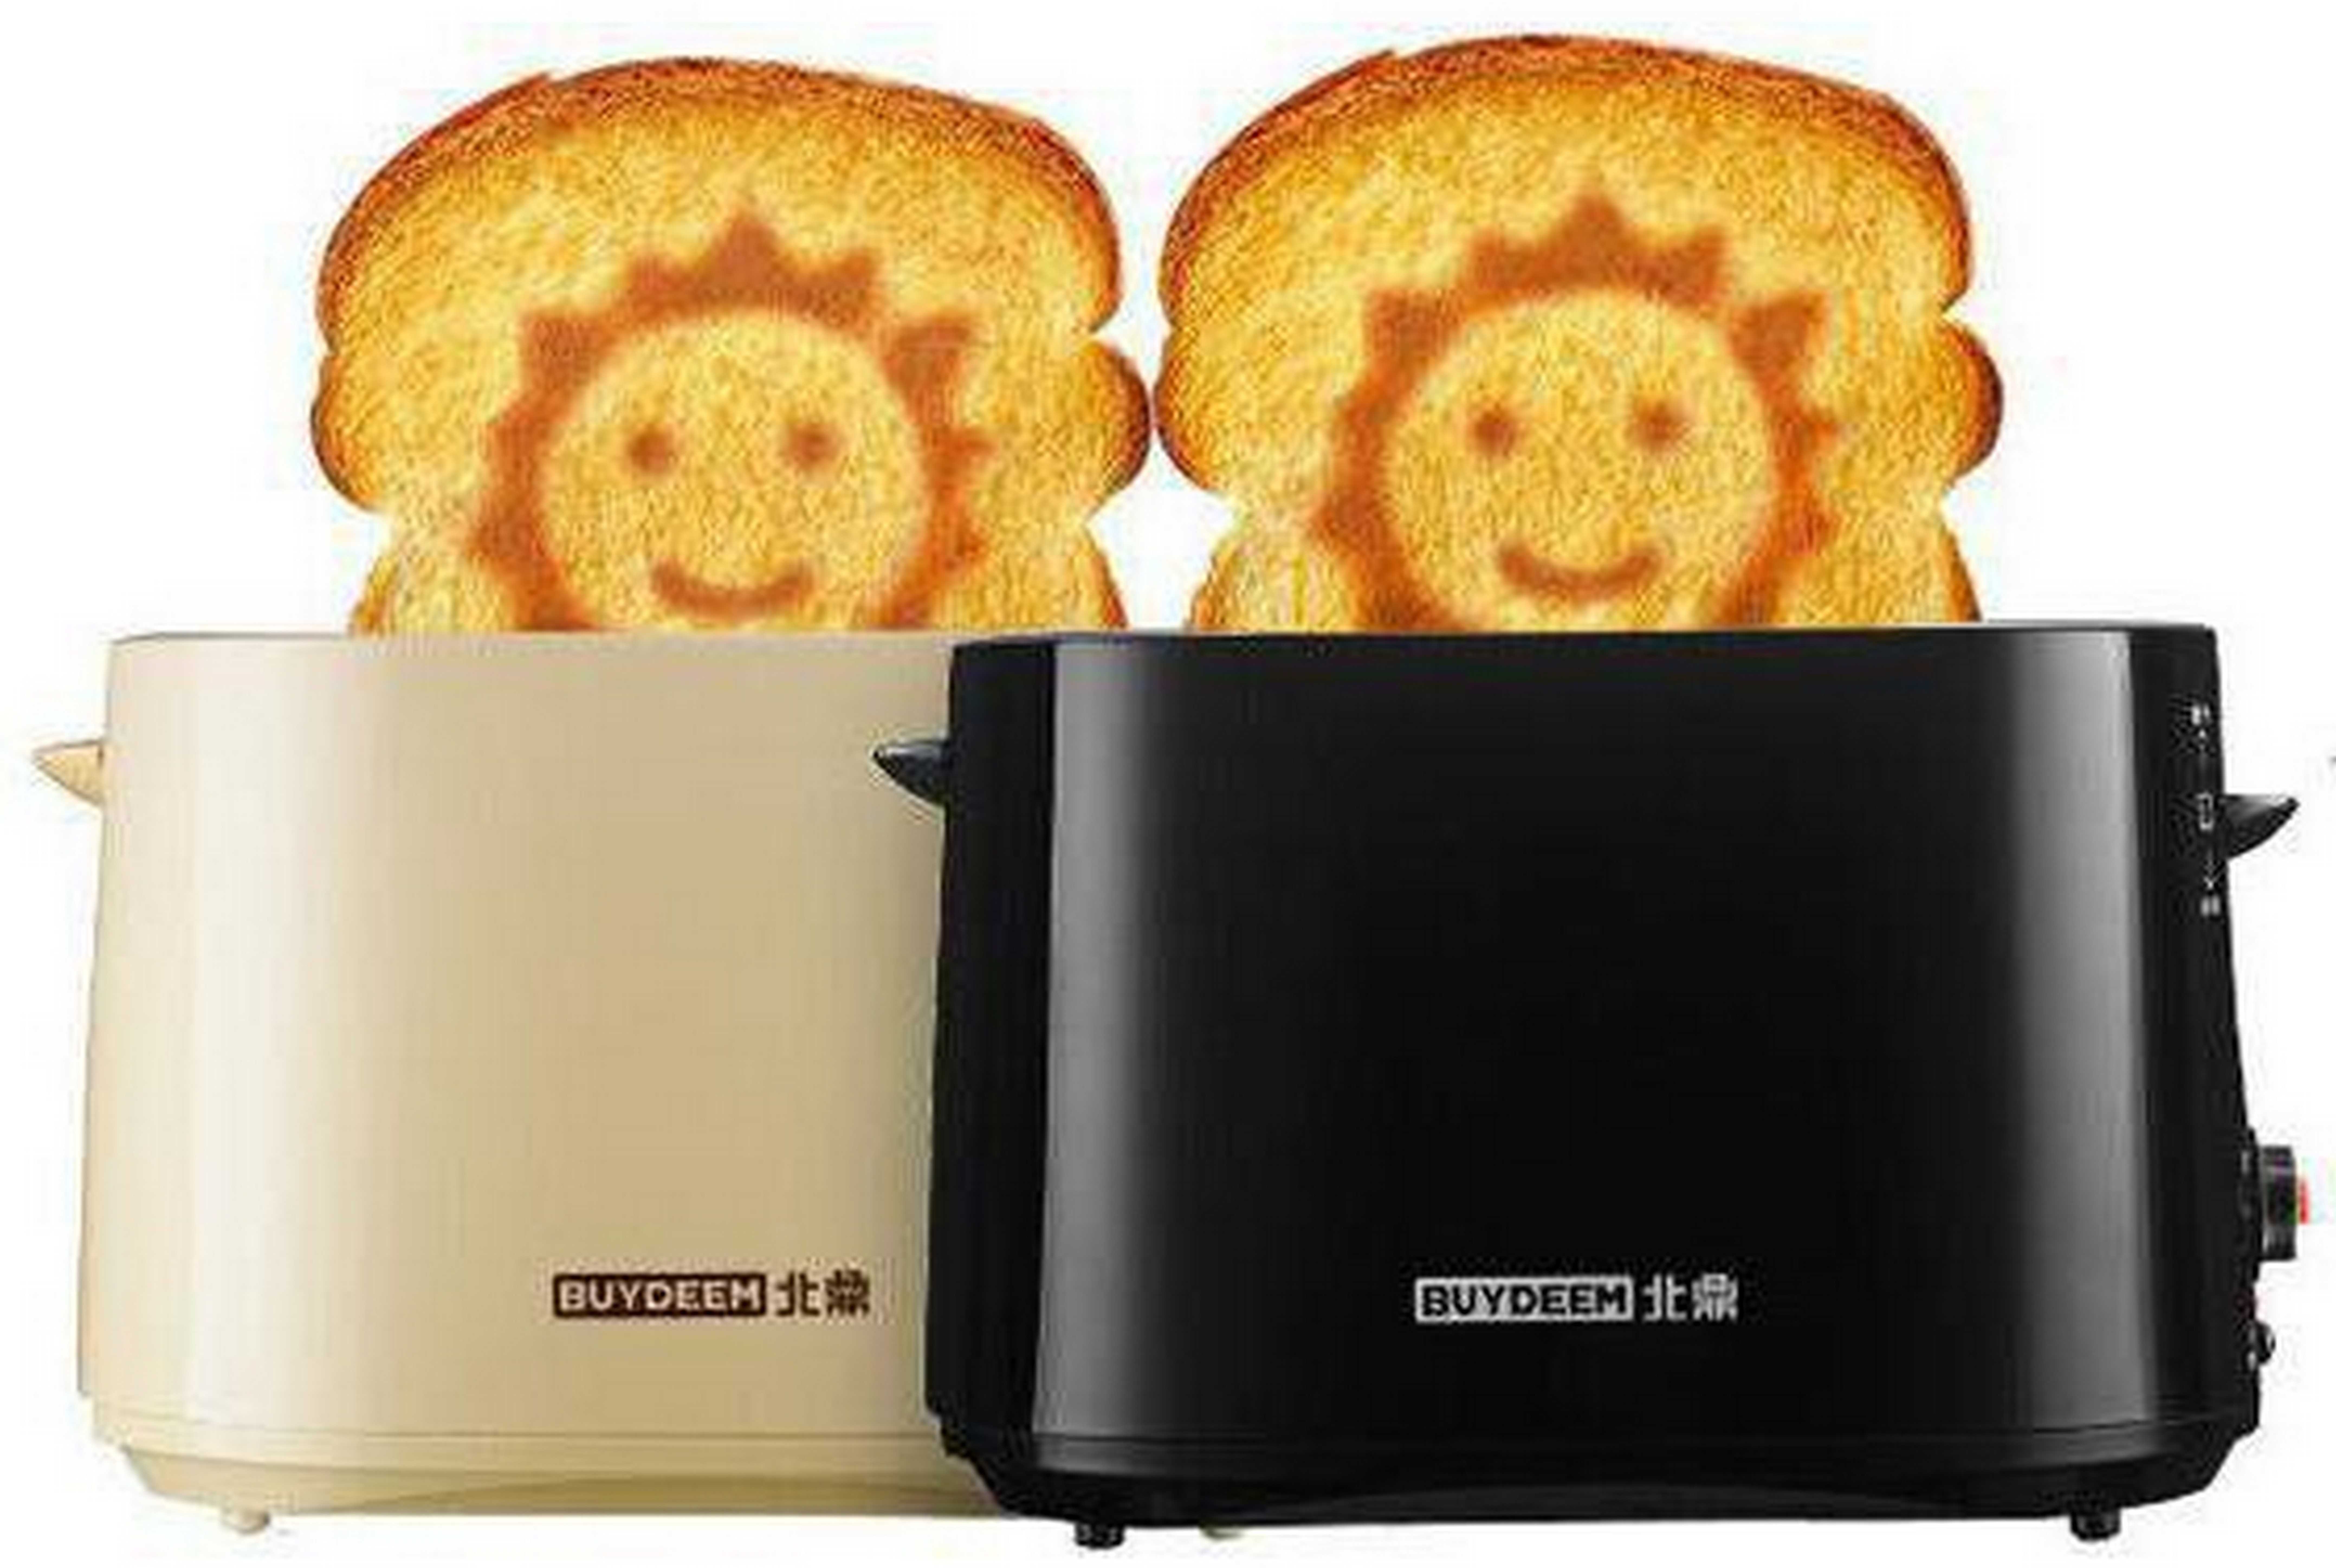 Сэндвич-тостер: как пользоваться, что это такое, преимущества, лучшие модели